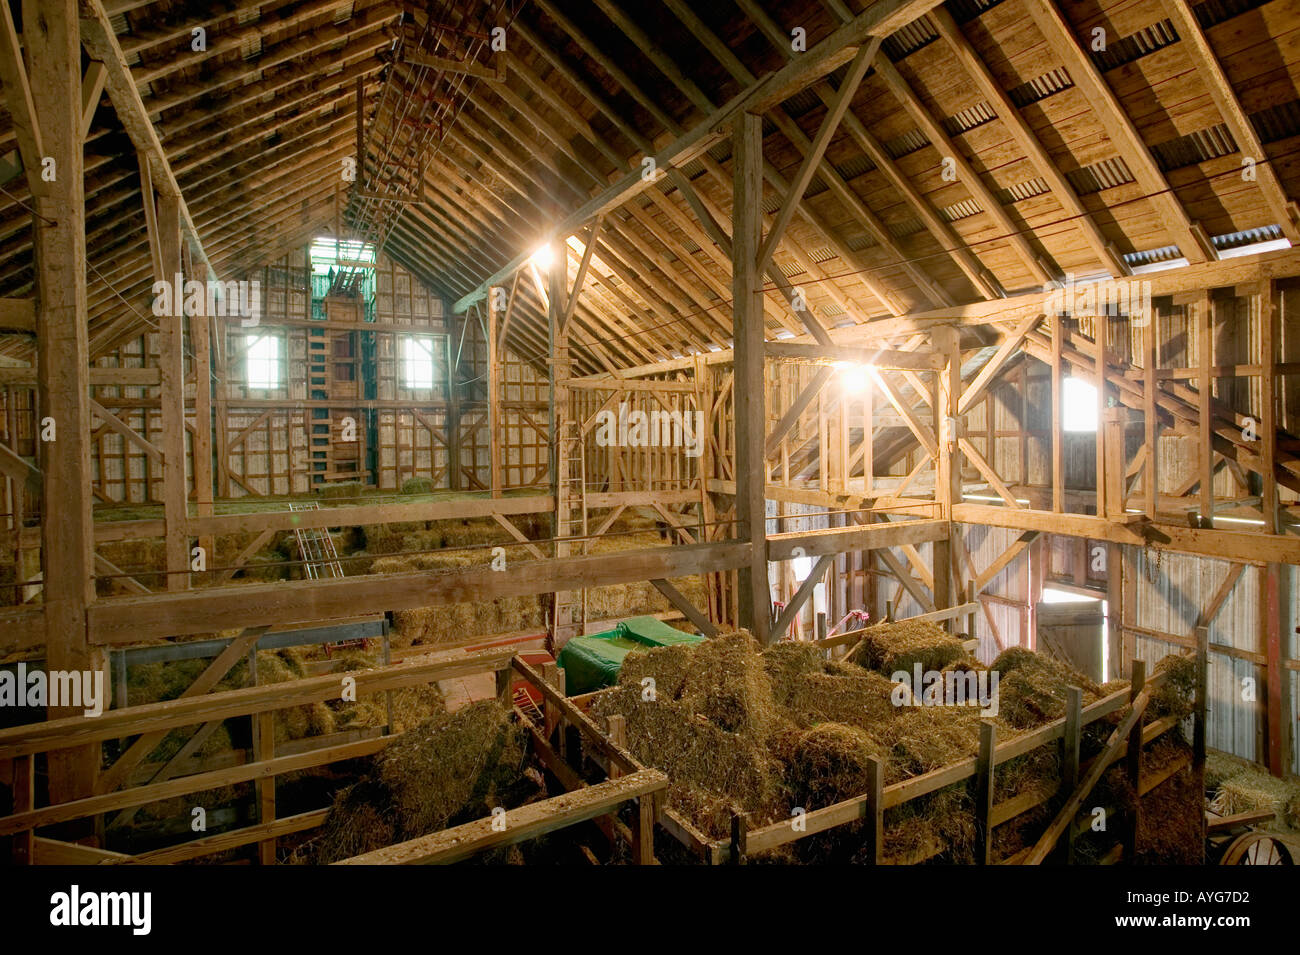 Post and beam Dutch barn built 1800s upstate New York Stock Photo